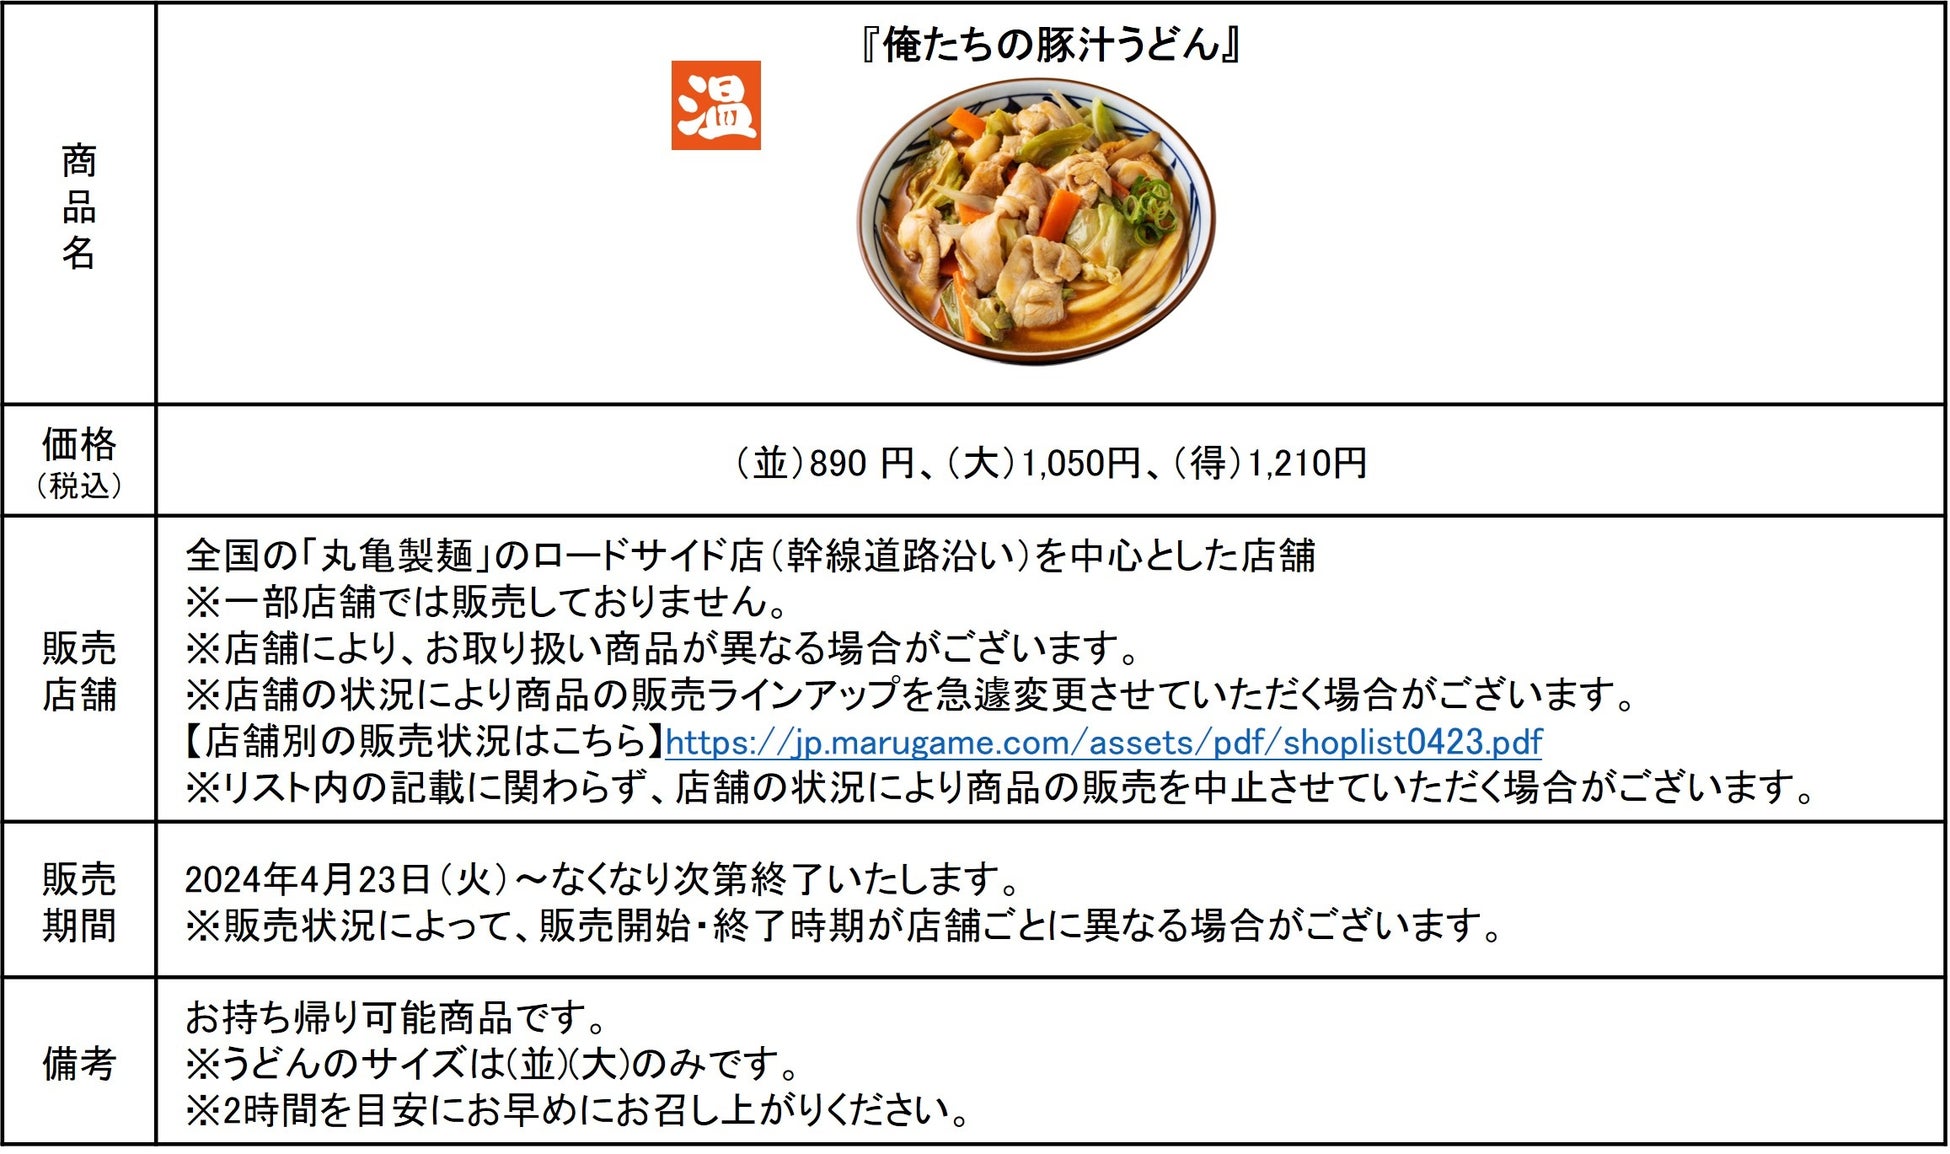 お客さまの熱い声にお応えし、唯一無二のあの味が再登場 丸亀製麺と株式会社TOKIOの自信作3種類が今だけ勢揃...